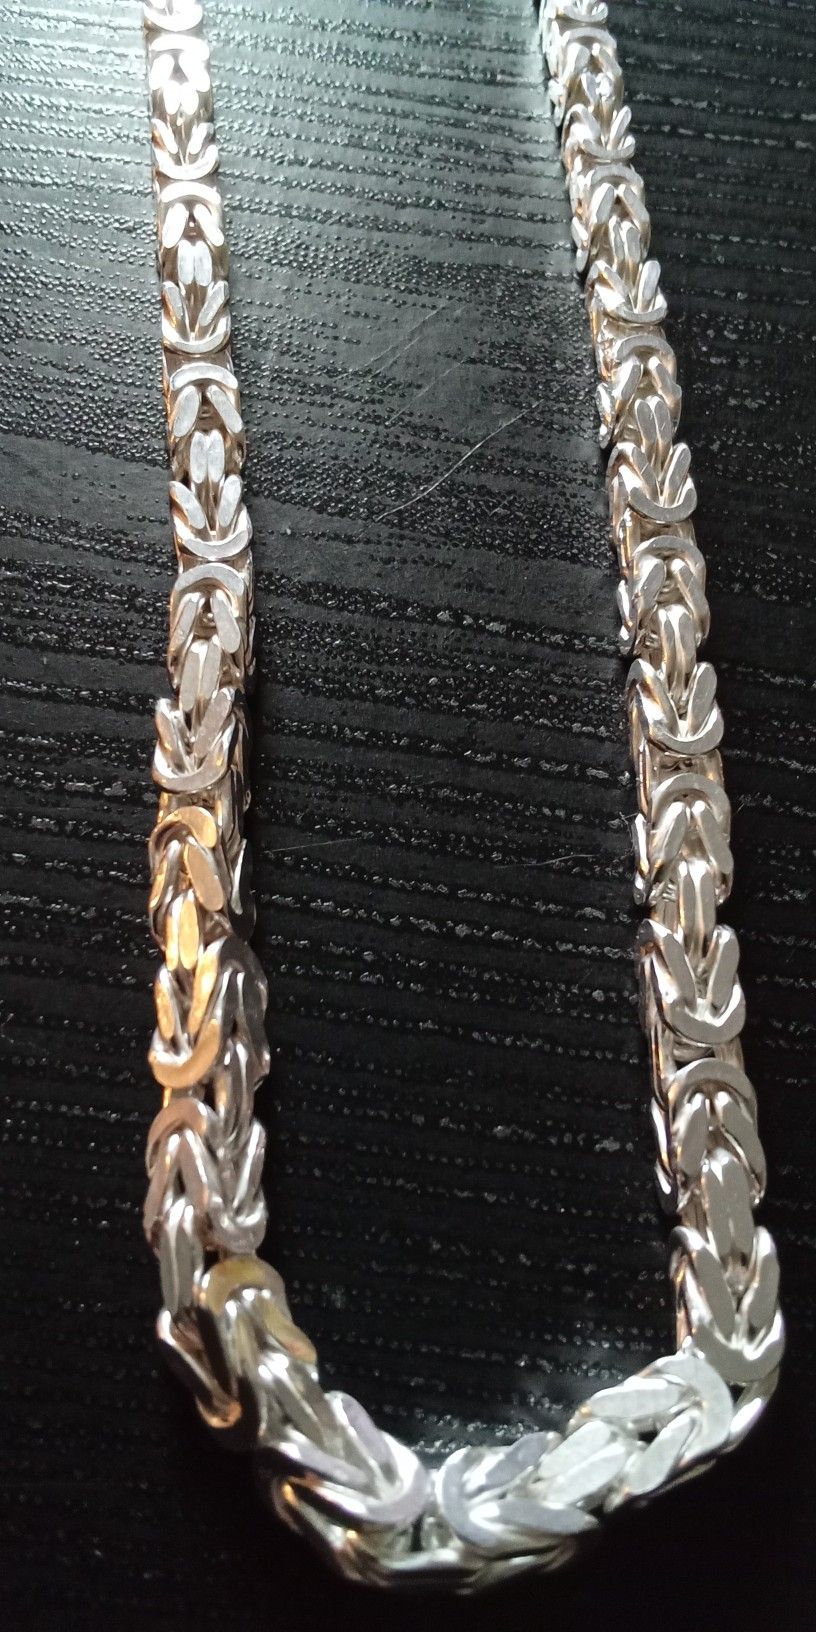 Sterling Silver Byzantine Necklace 